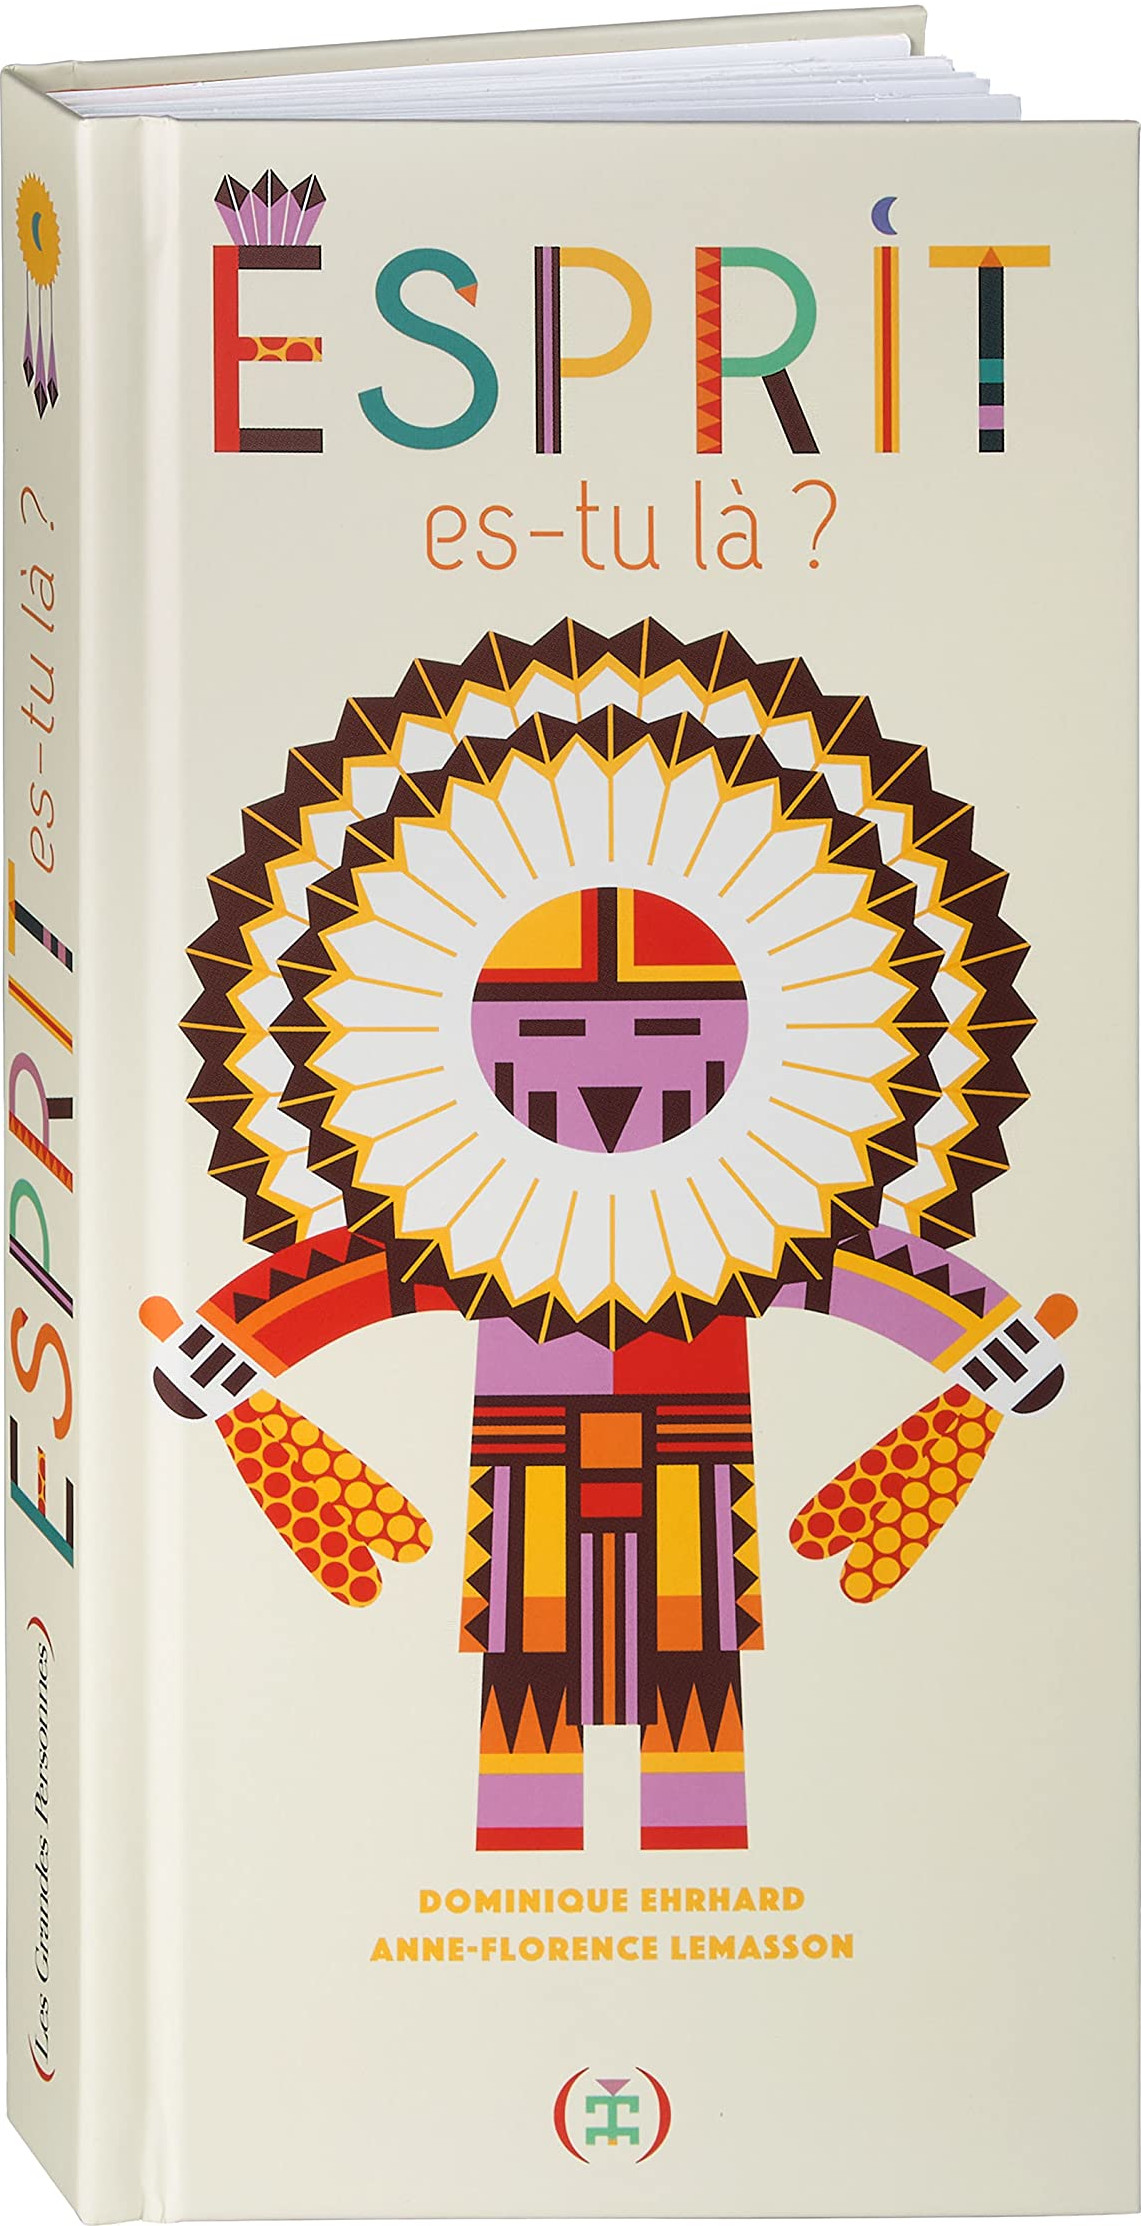 Librairie Les Cerfs-Volants on Instagram: Pourquoi la librairie « Les Cerfs -Volants » ? En référence à ce très beau roman de Romai…